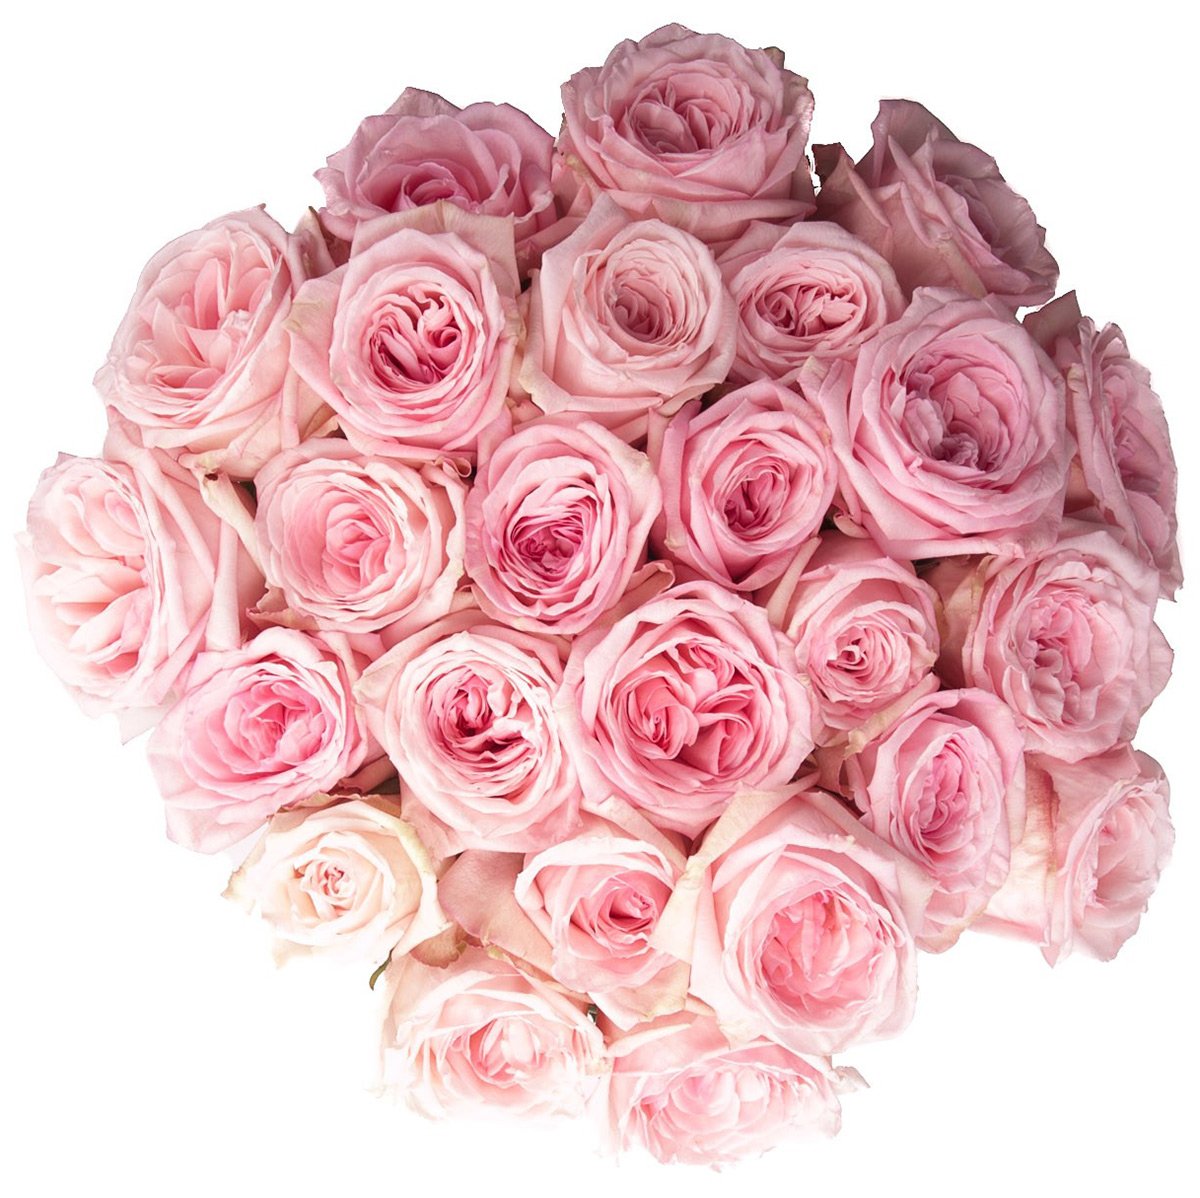 Фото Нежных Розовых Цветов